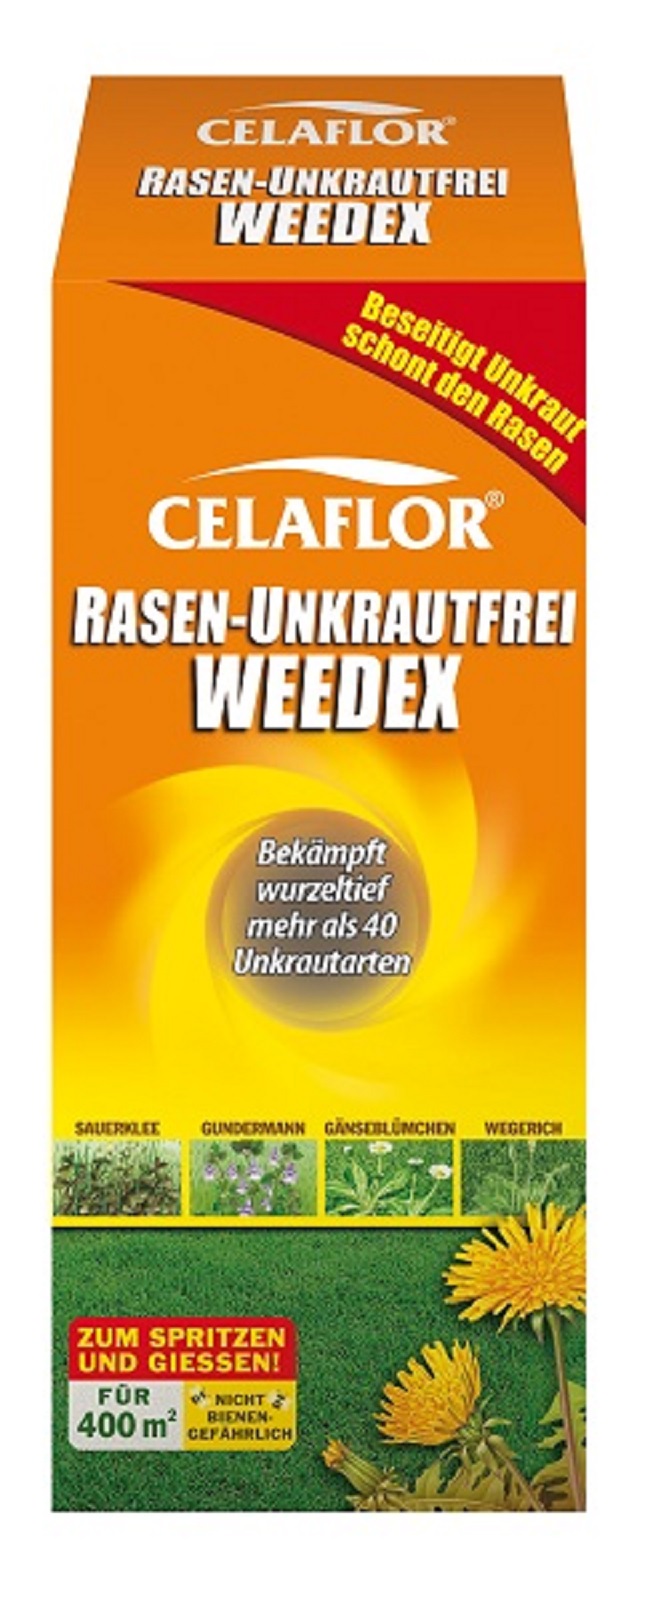 Celaflor Rasen Unkrautfrei Weedex  5 x 400 ml